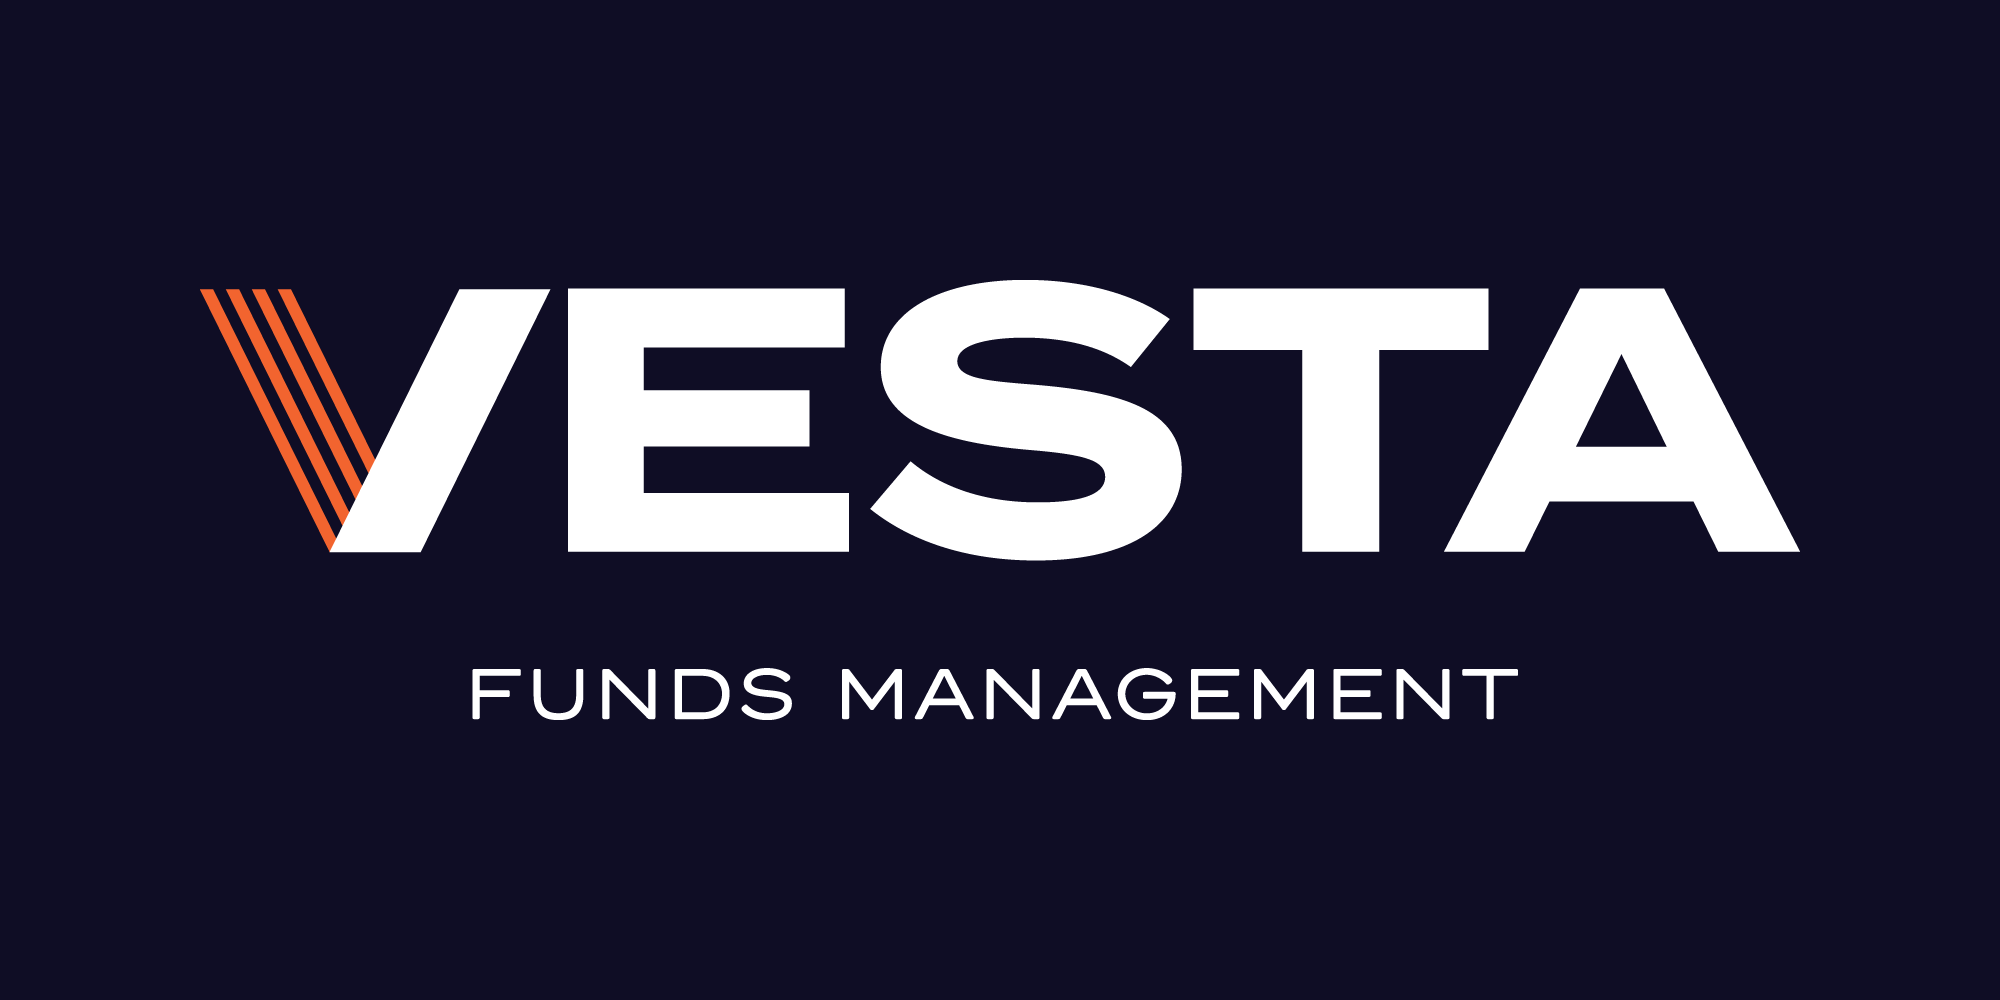 Vesta-Funds-Management-Logo-White+Orange-Navy-Background (002).png